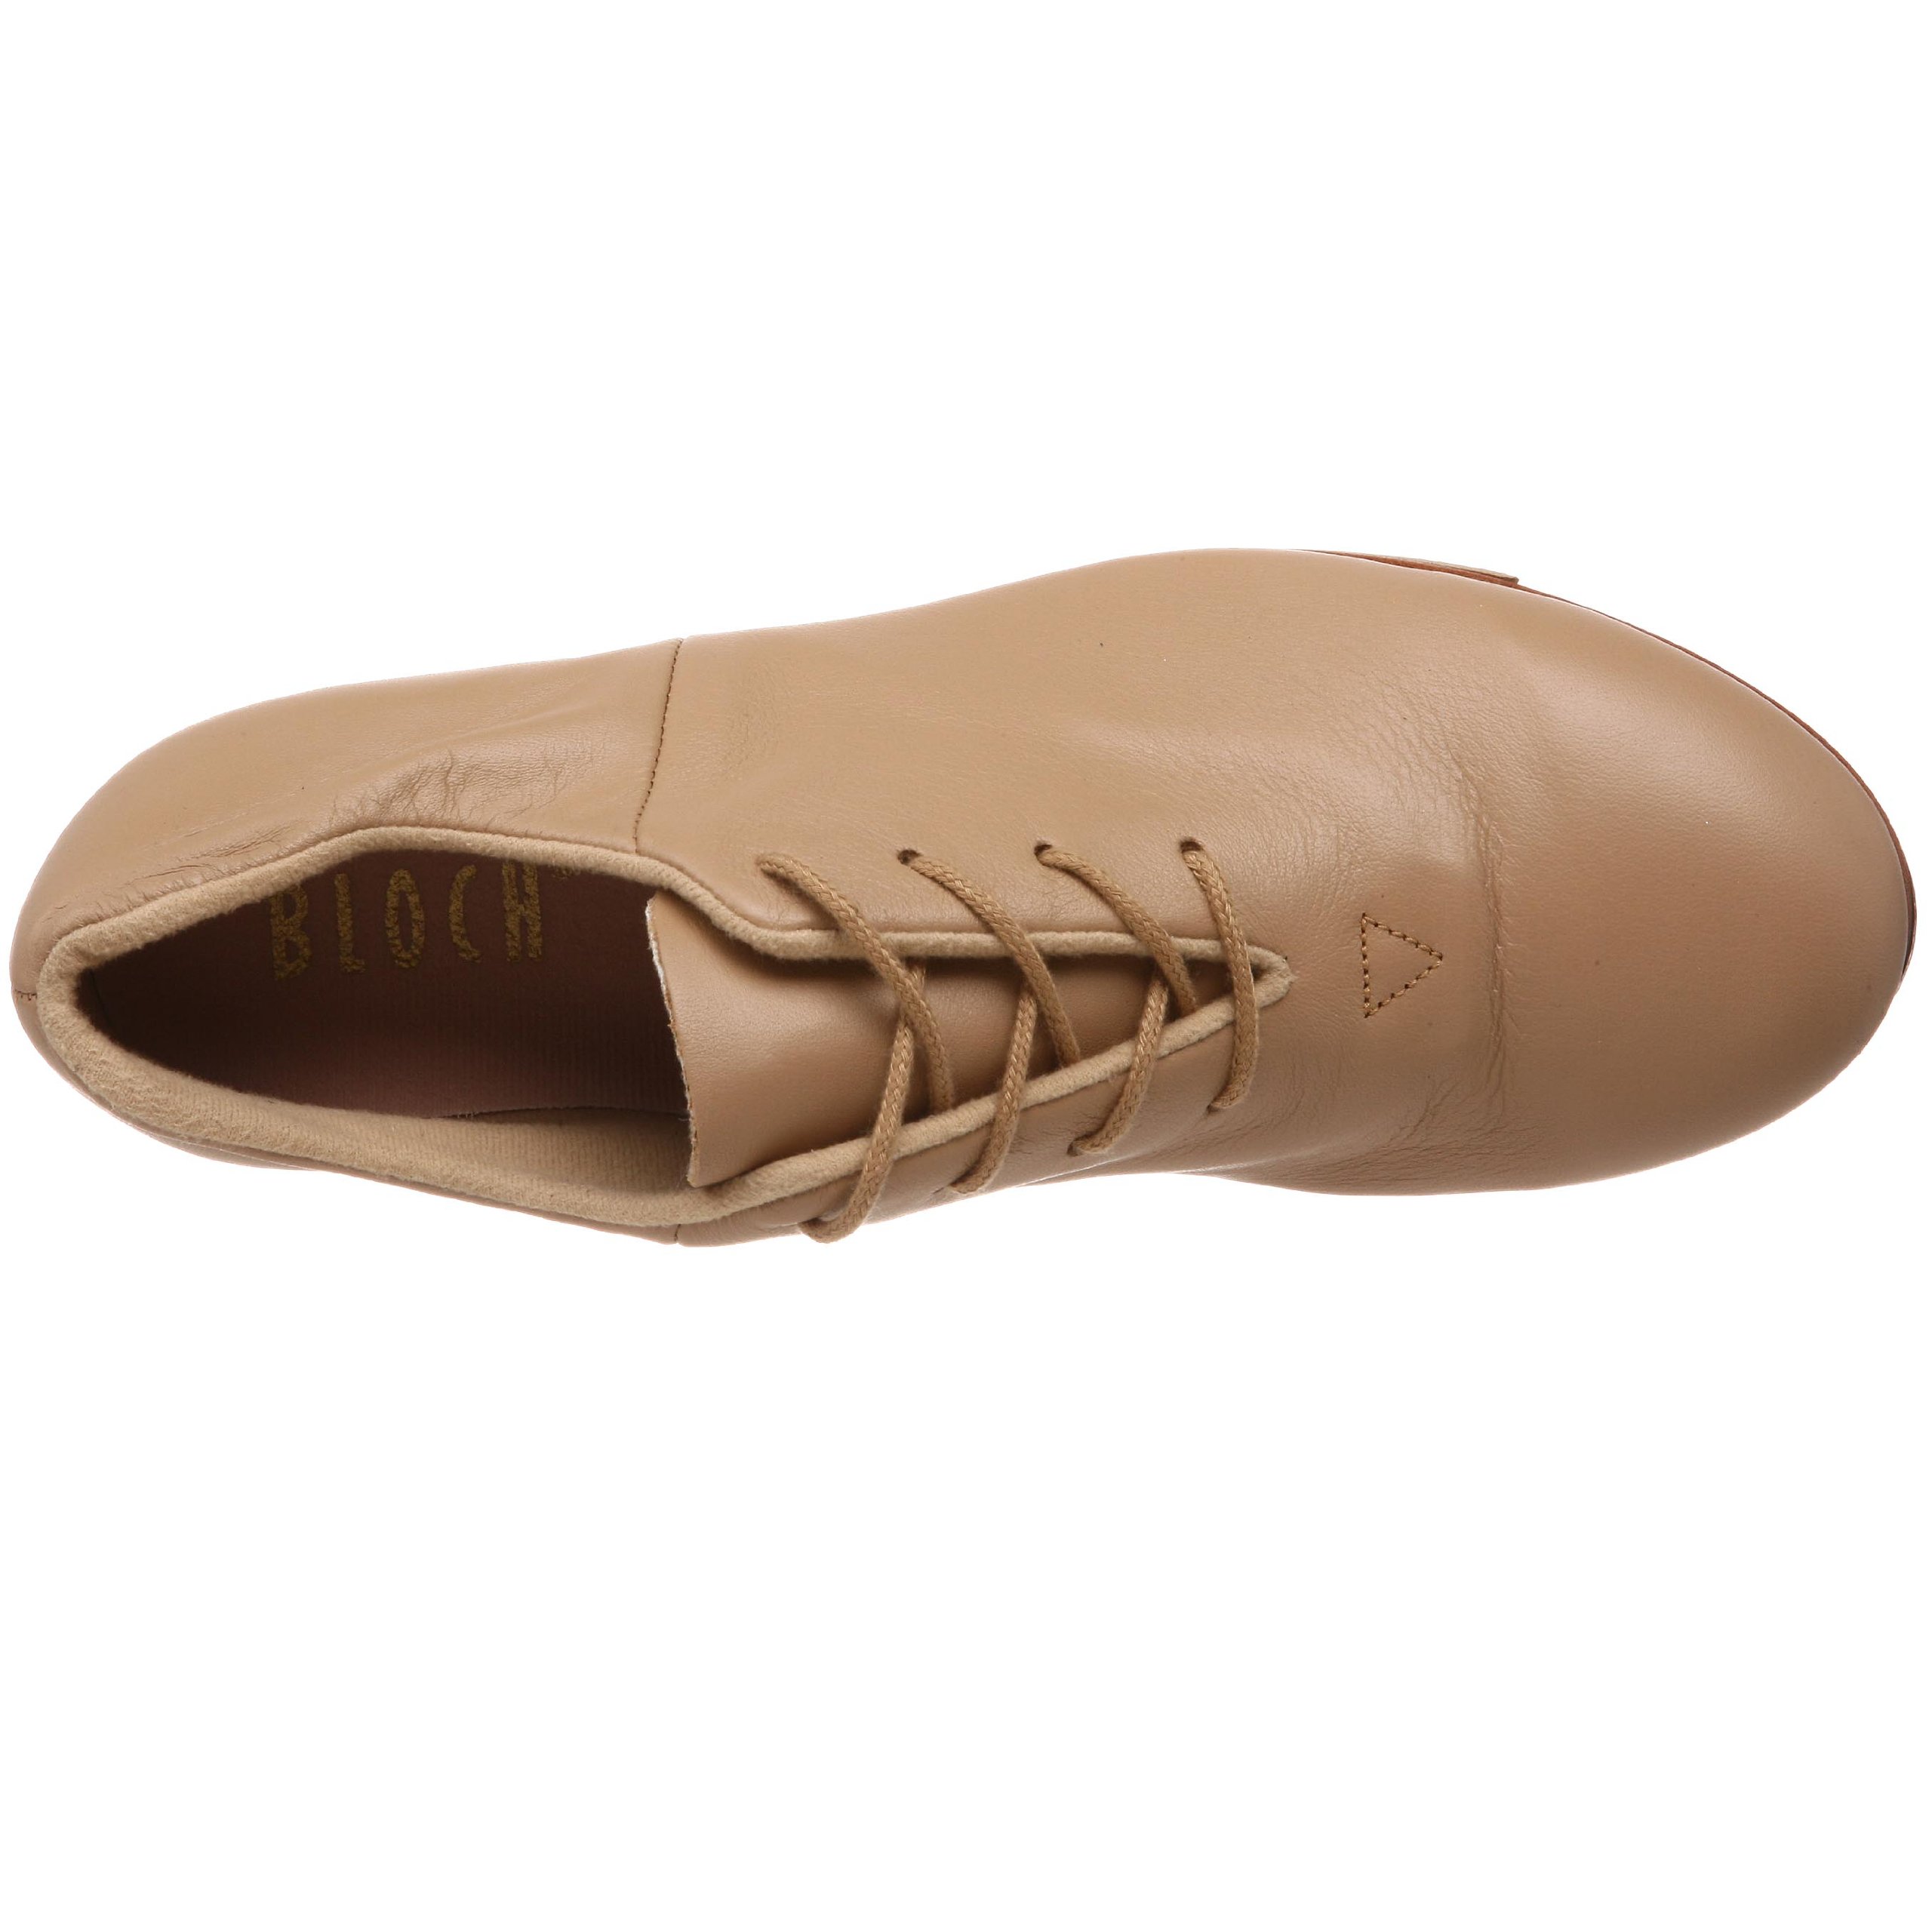 Bloch Dance Women's Tap-Flex Leather Tap Shoe